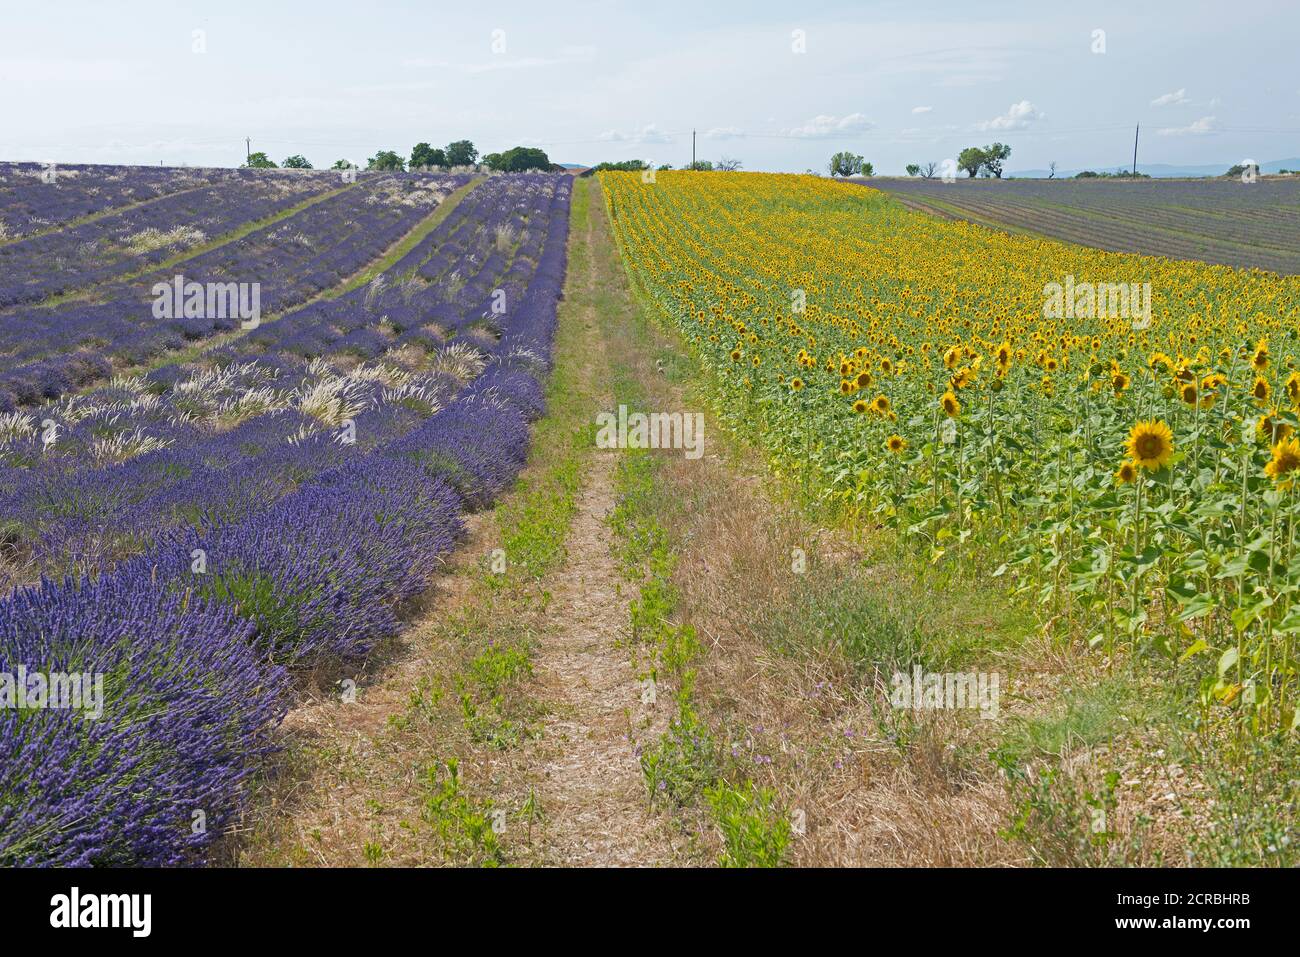 France, Alpes de Haute Provence, Plateau de Valensole, lavender and sunflower fields (Lavandula sp.) Stock Photo